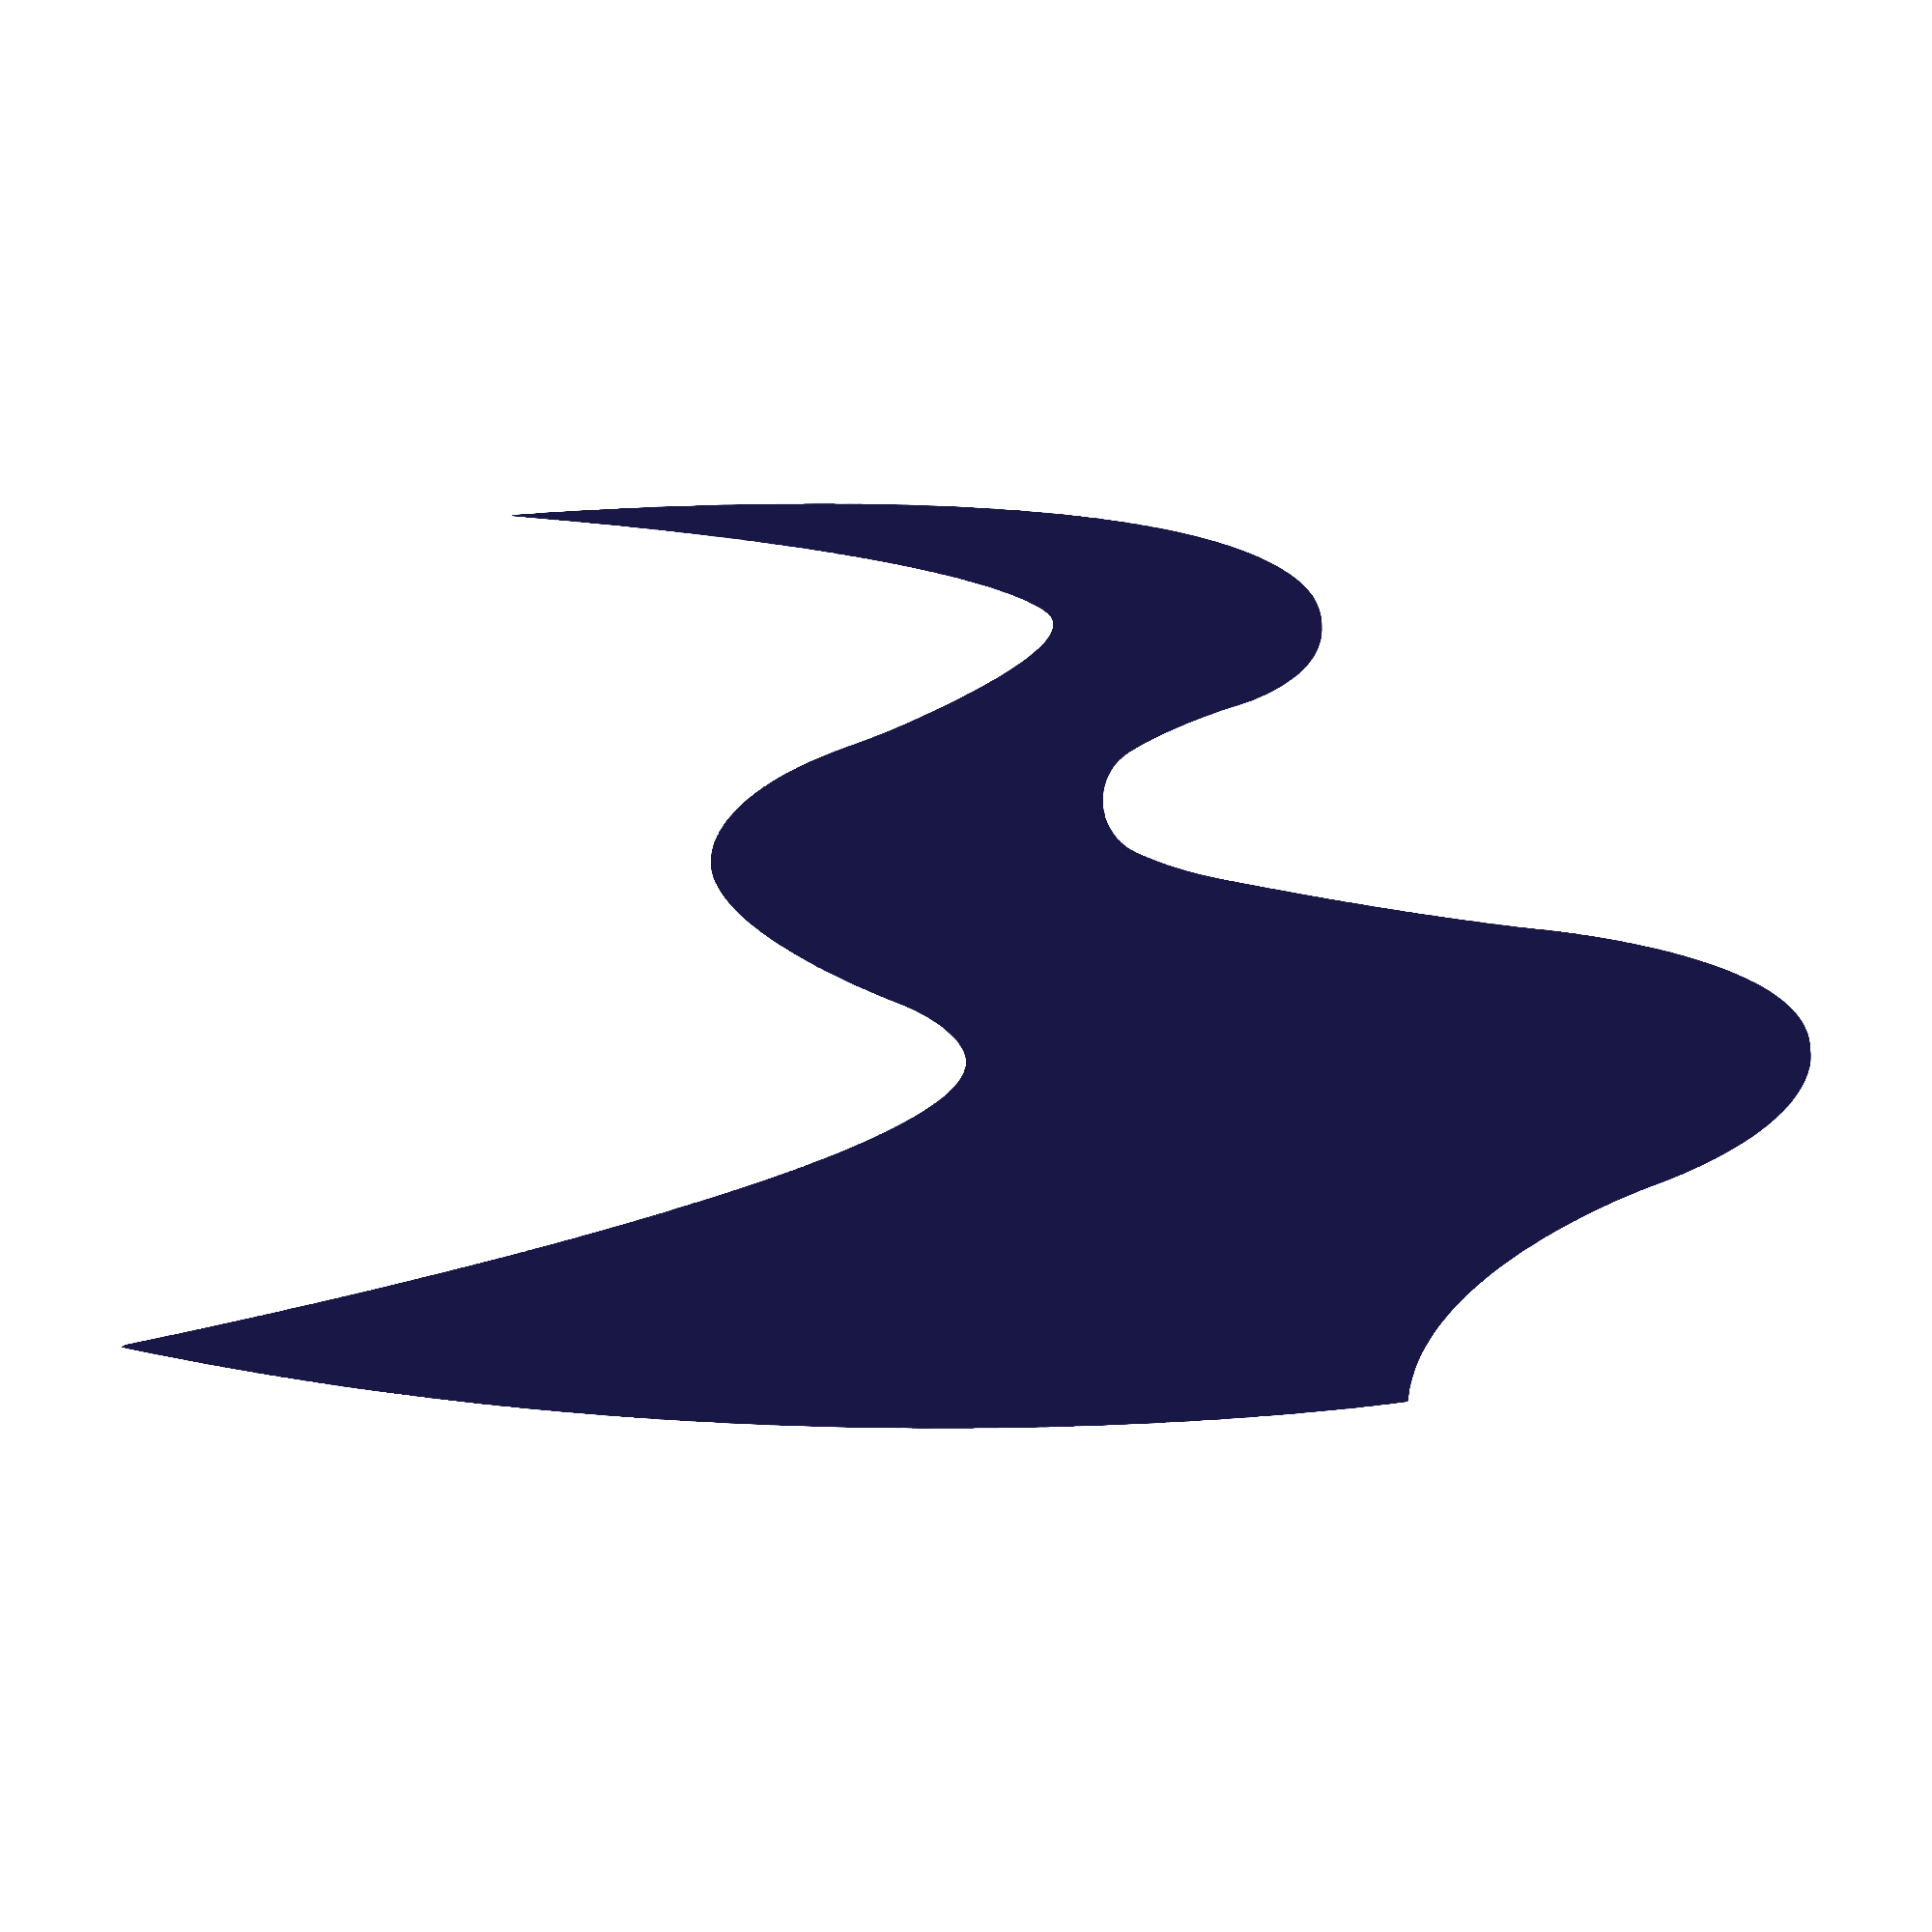 river-icon-logo-vector-design-template_827767-214